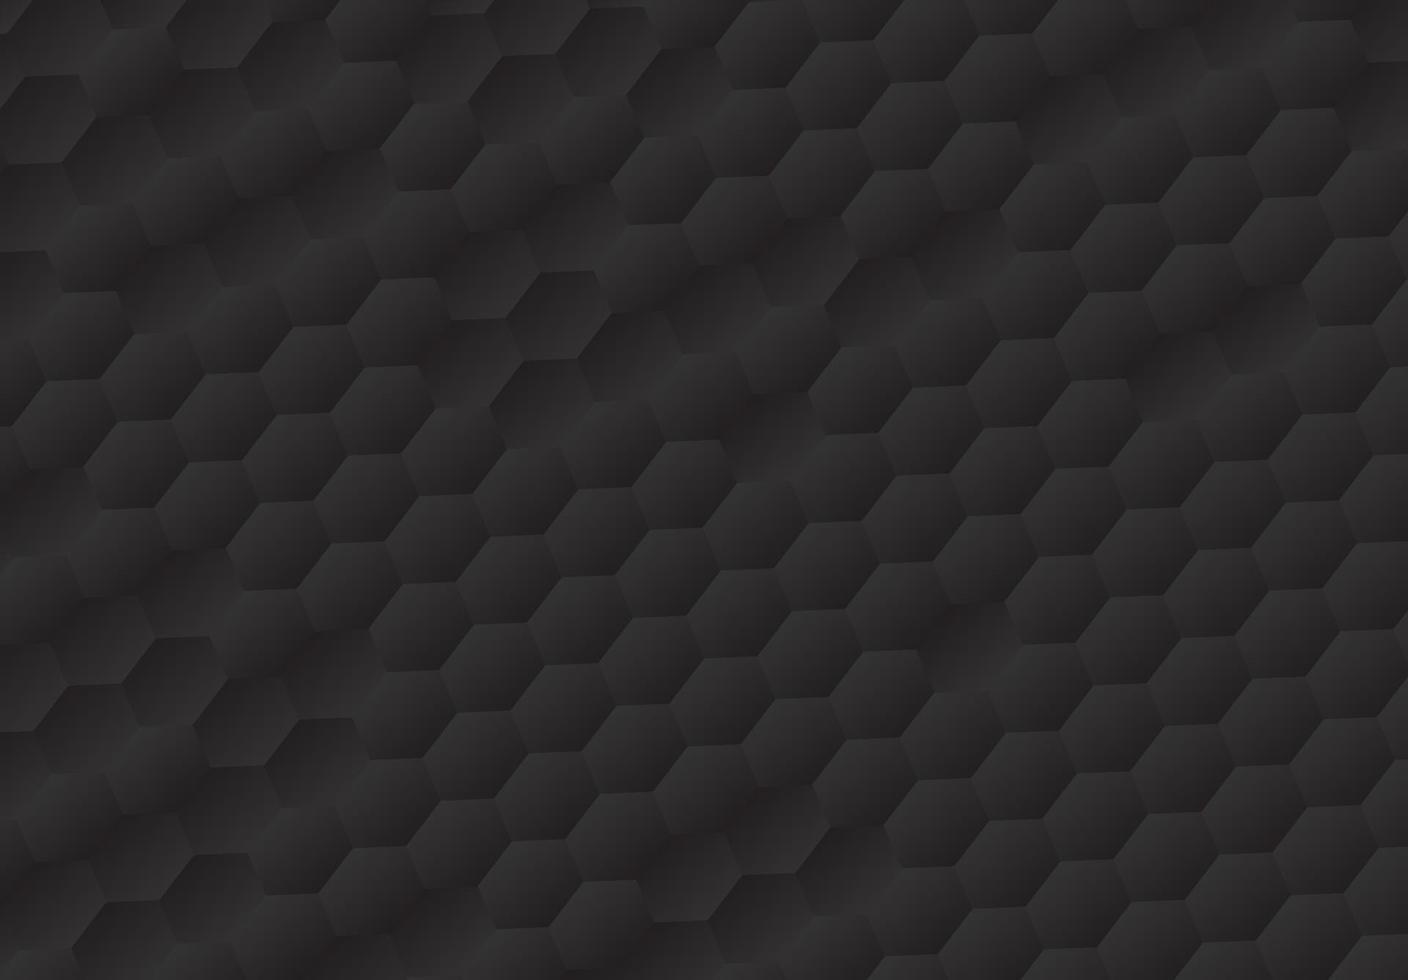 el fondo negro en forma de panal tiene espacio de copia, patrón de polígono, luz y sombra sobre fondo oscuro, hexágono en relieve vector